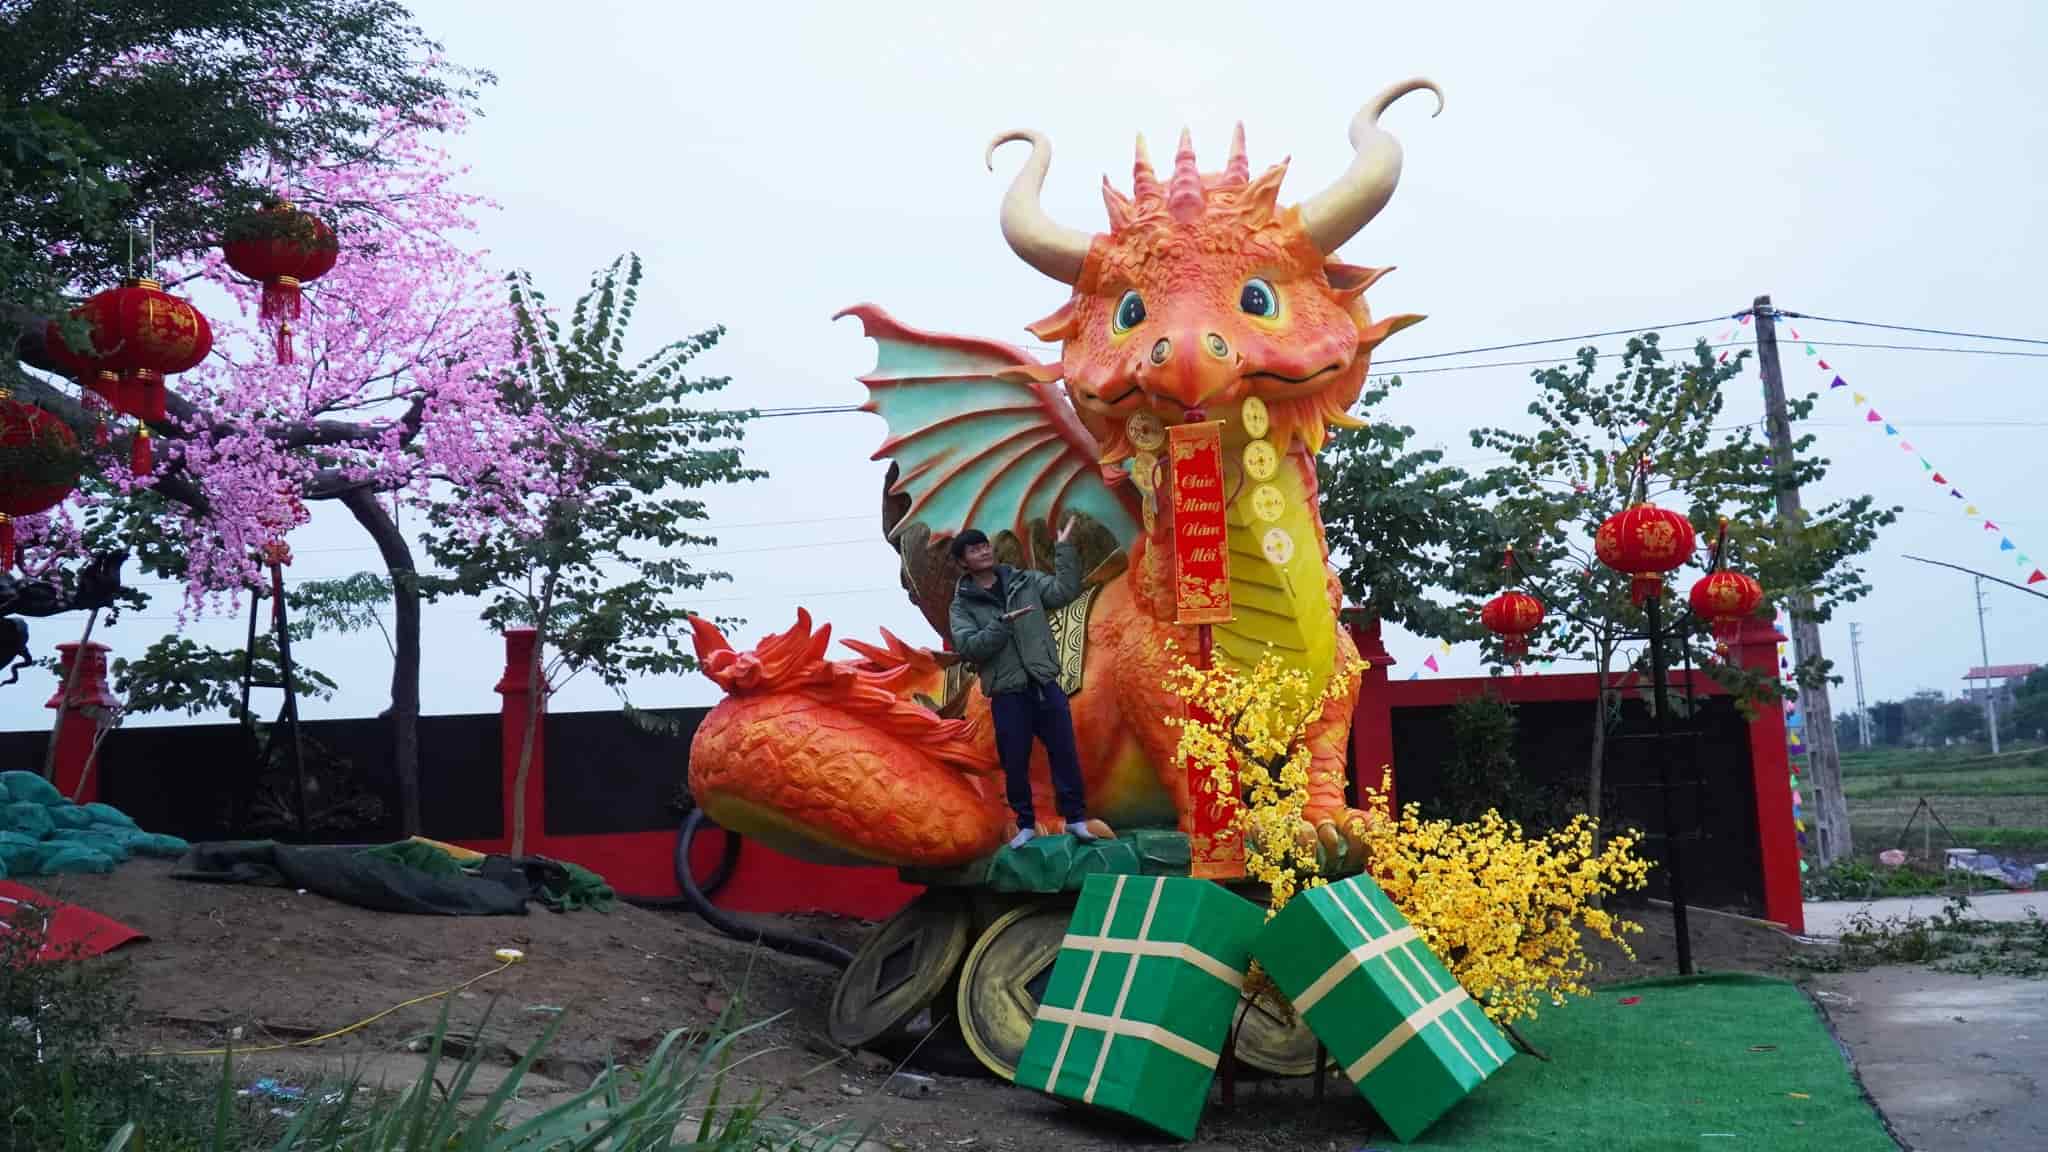 Tác phẩm do anh Bùi Văn Quân (32 tuổi) thực hiện tại Bắc Giang. Anh đặt tên cho bức tượng này là “Rồng hạnh phúc“. Anh hy vọng dù người lớn hay trẻ em khi nhìn vào bức tượng này đều cảm nhận được sự dễ thương và thân thiện. Ảnh: Văn Quân